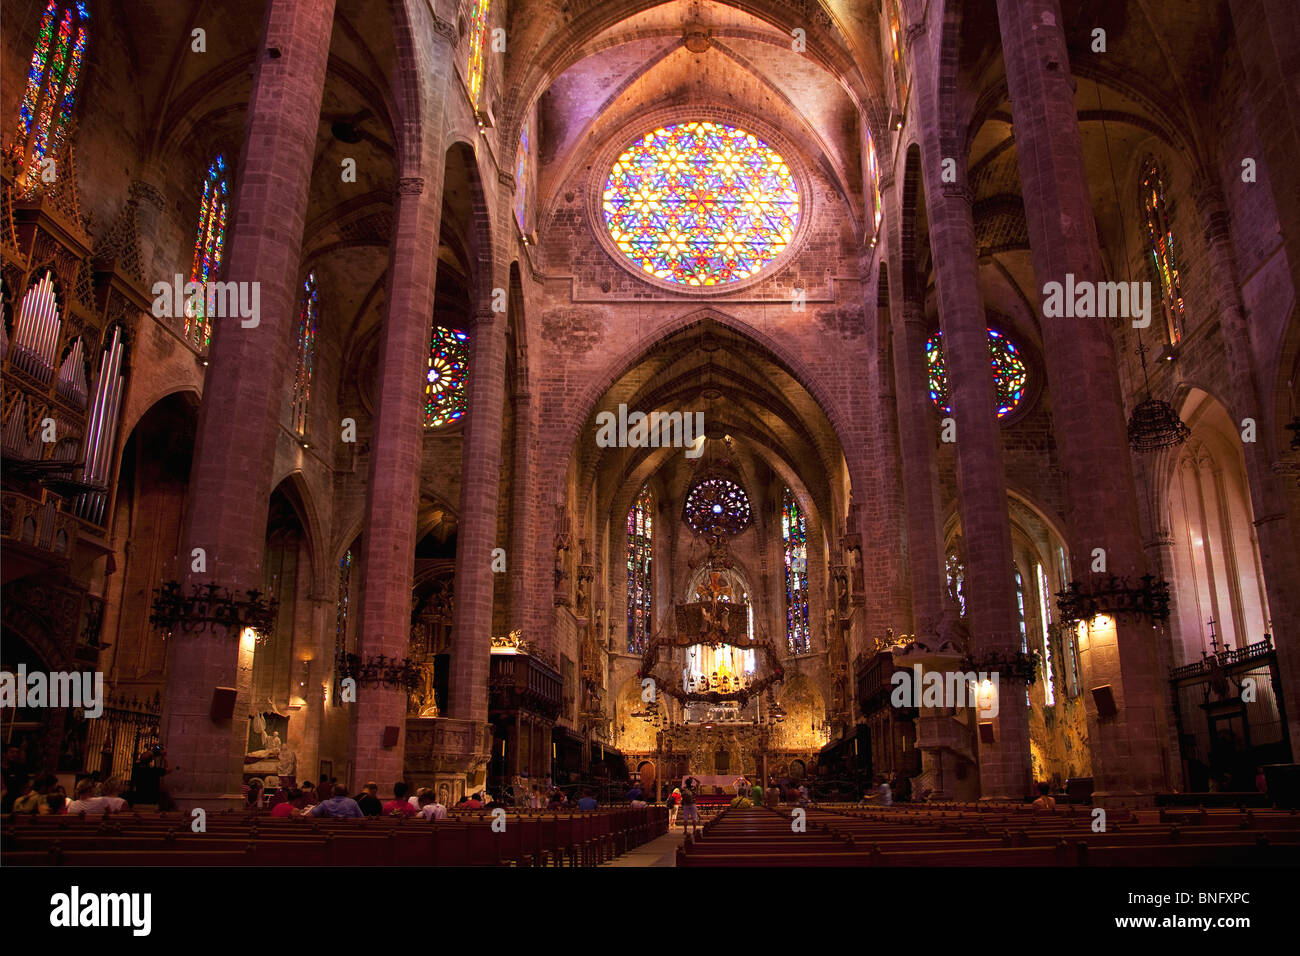 Nave central interiores con Antoni Gaudí baldaquino en una catedral, la Catedral de Palma, Palma de Mallorca, Islas Baleares, España Foto de stock